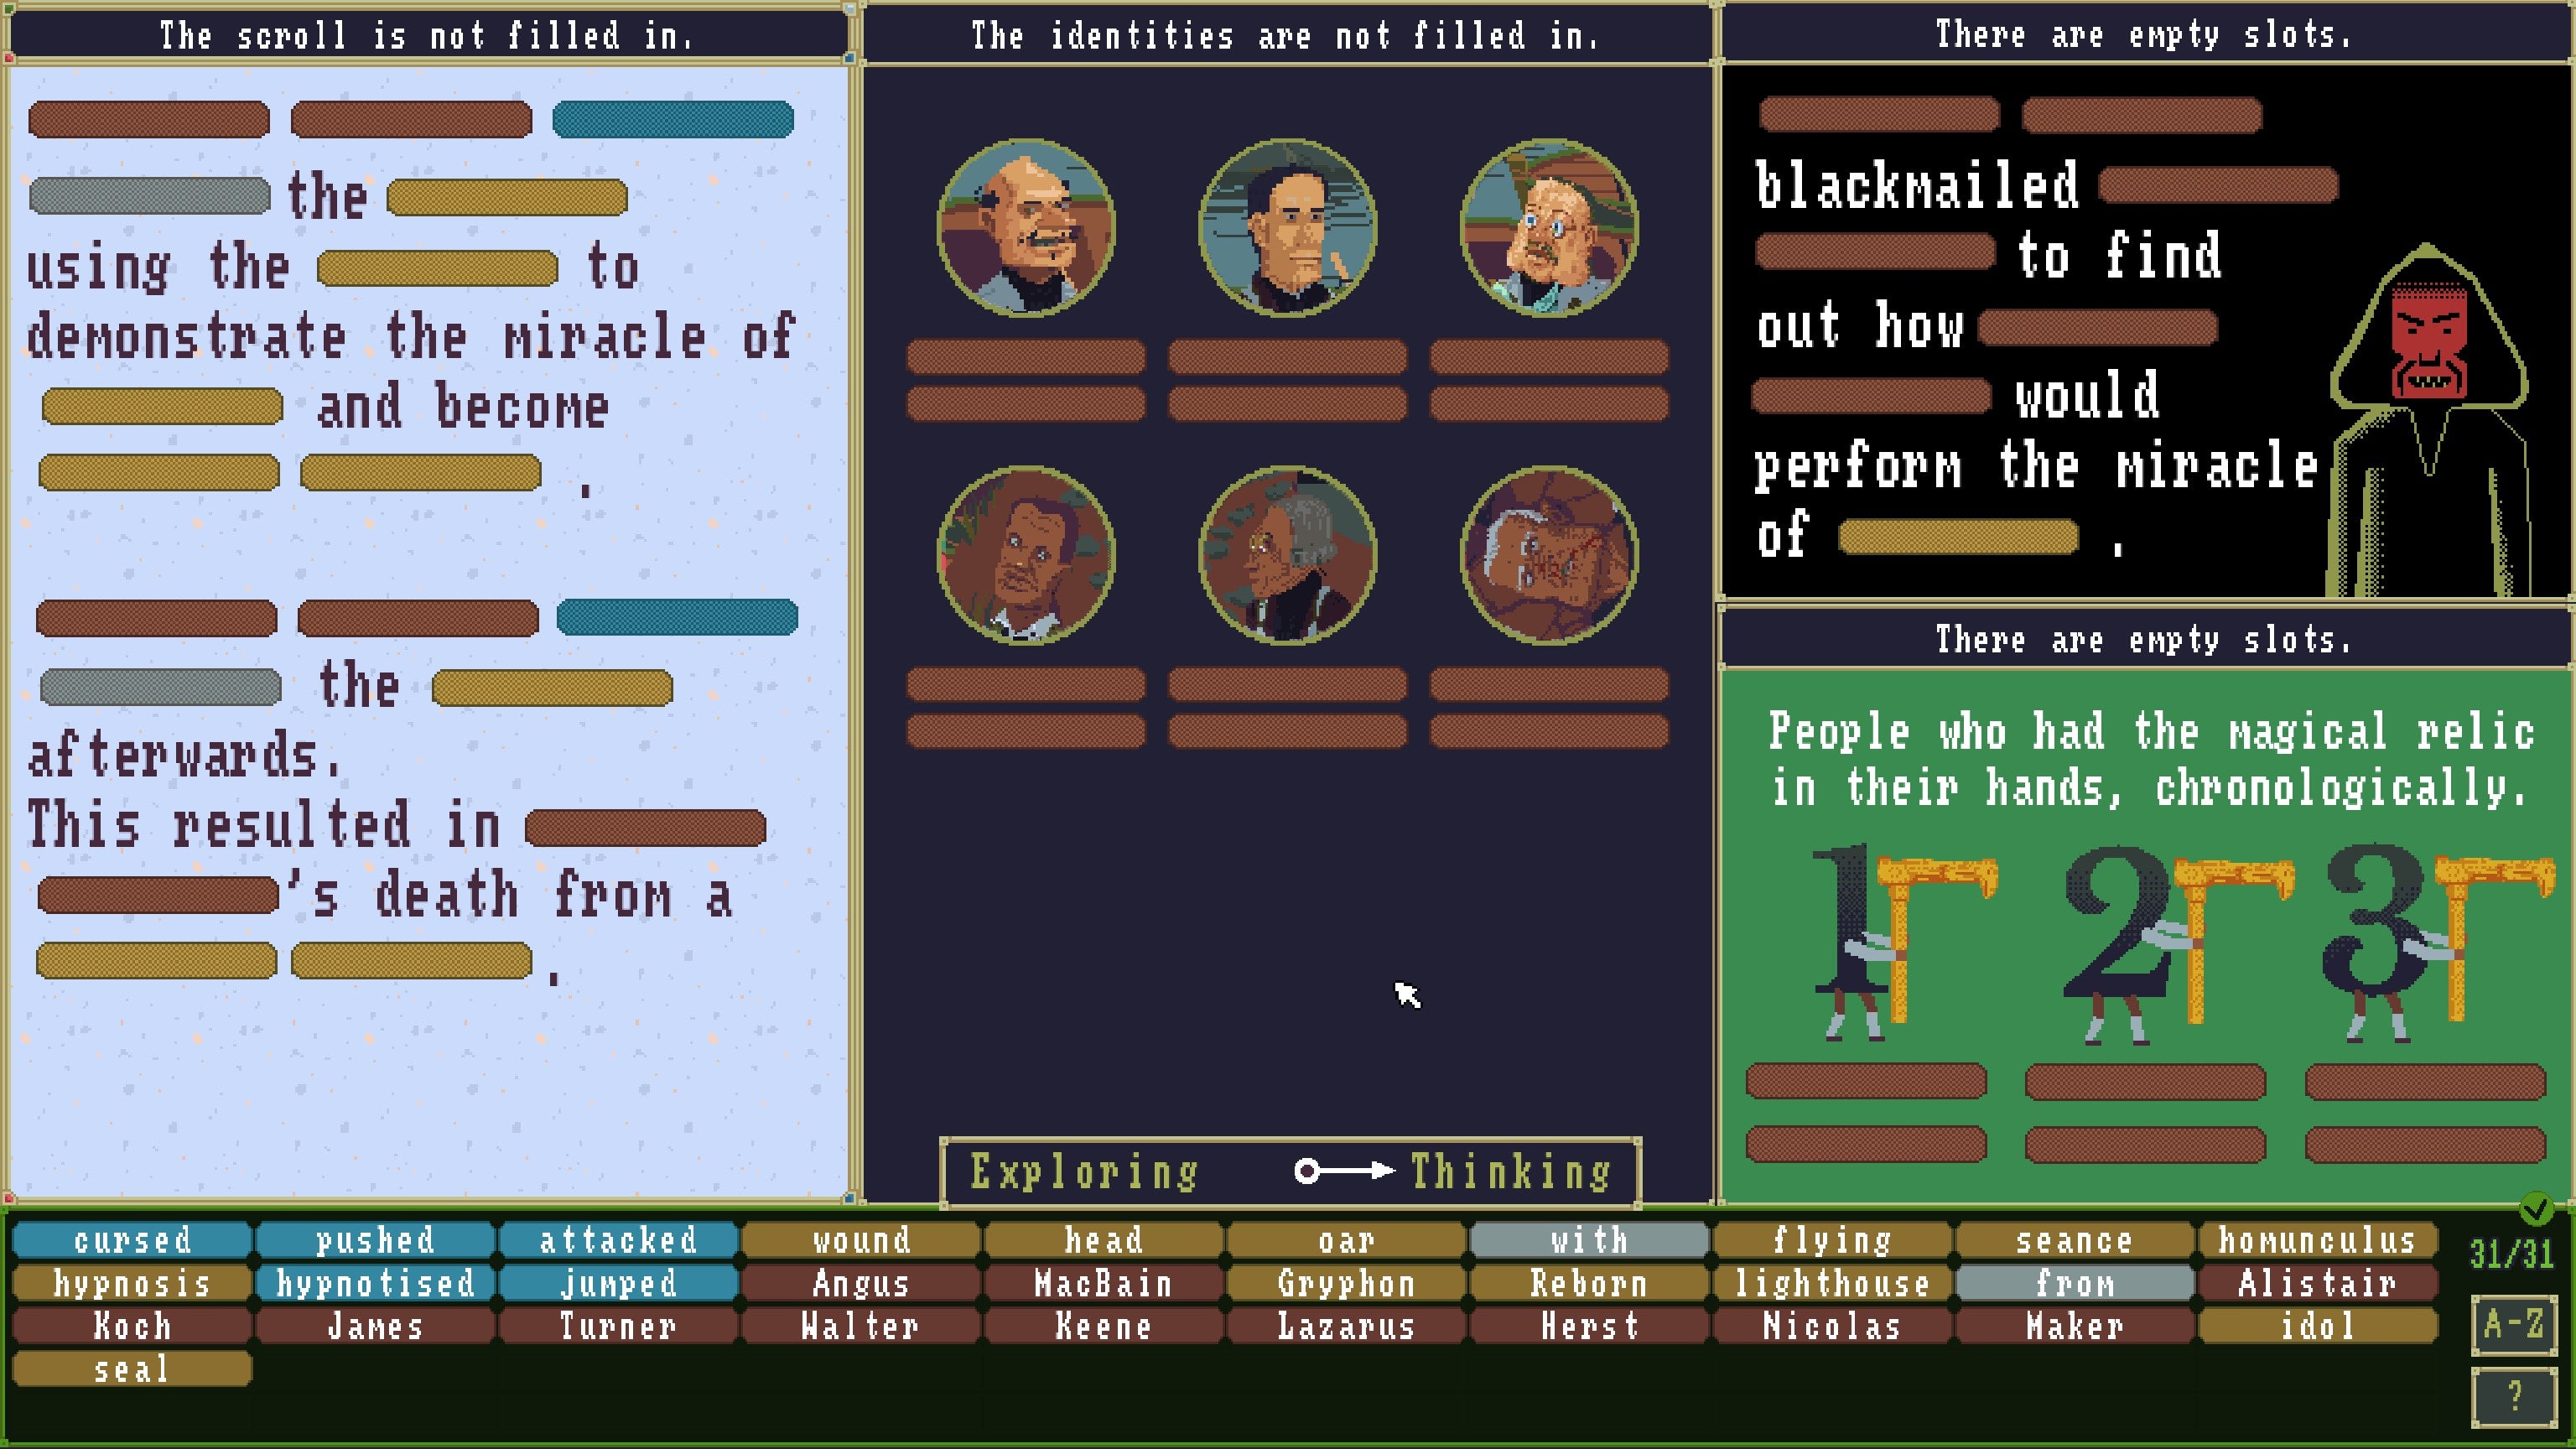 La pantalla está dividida en cuatro segmentos con texto, retratos de personajes y dos acertijos adicionales basados ​​en texto que debe completar el jugador en El caso del ídolo dorado.